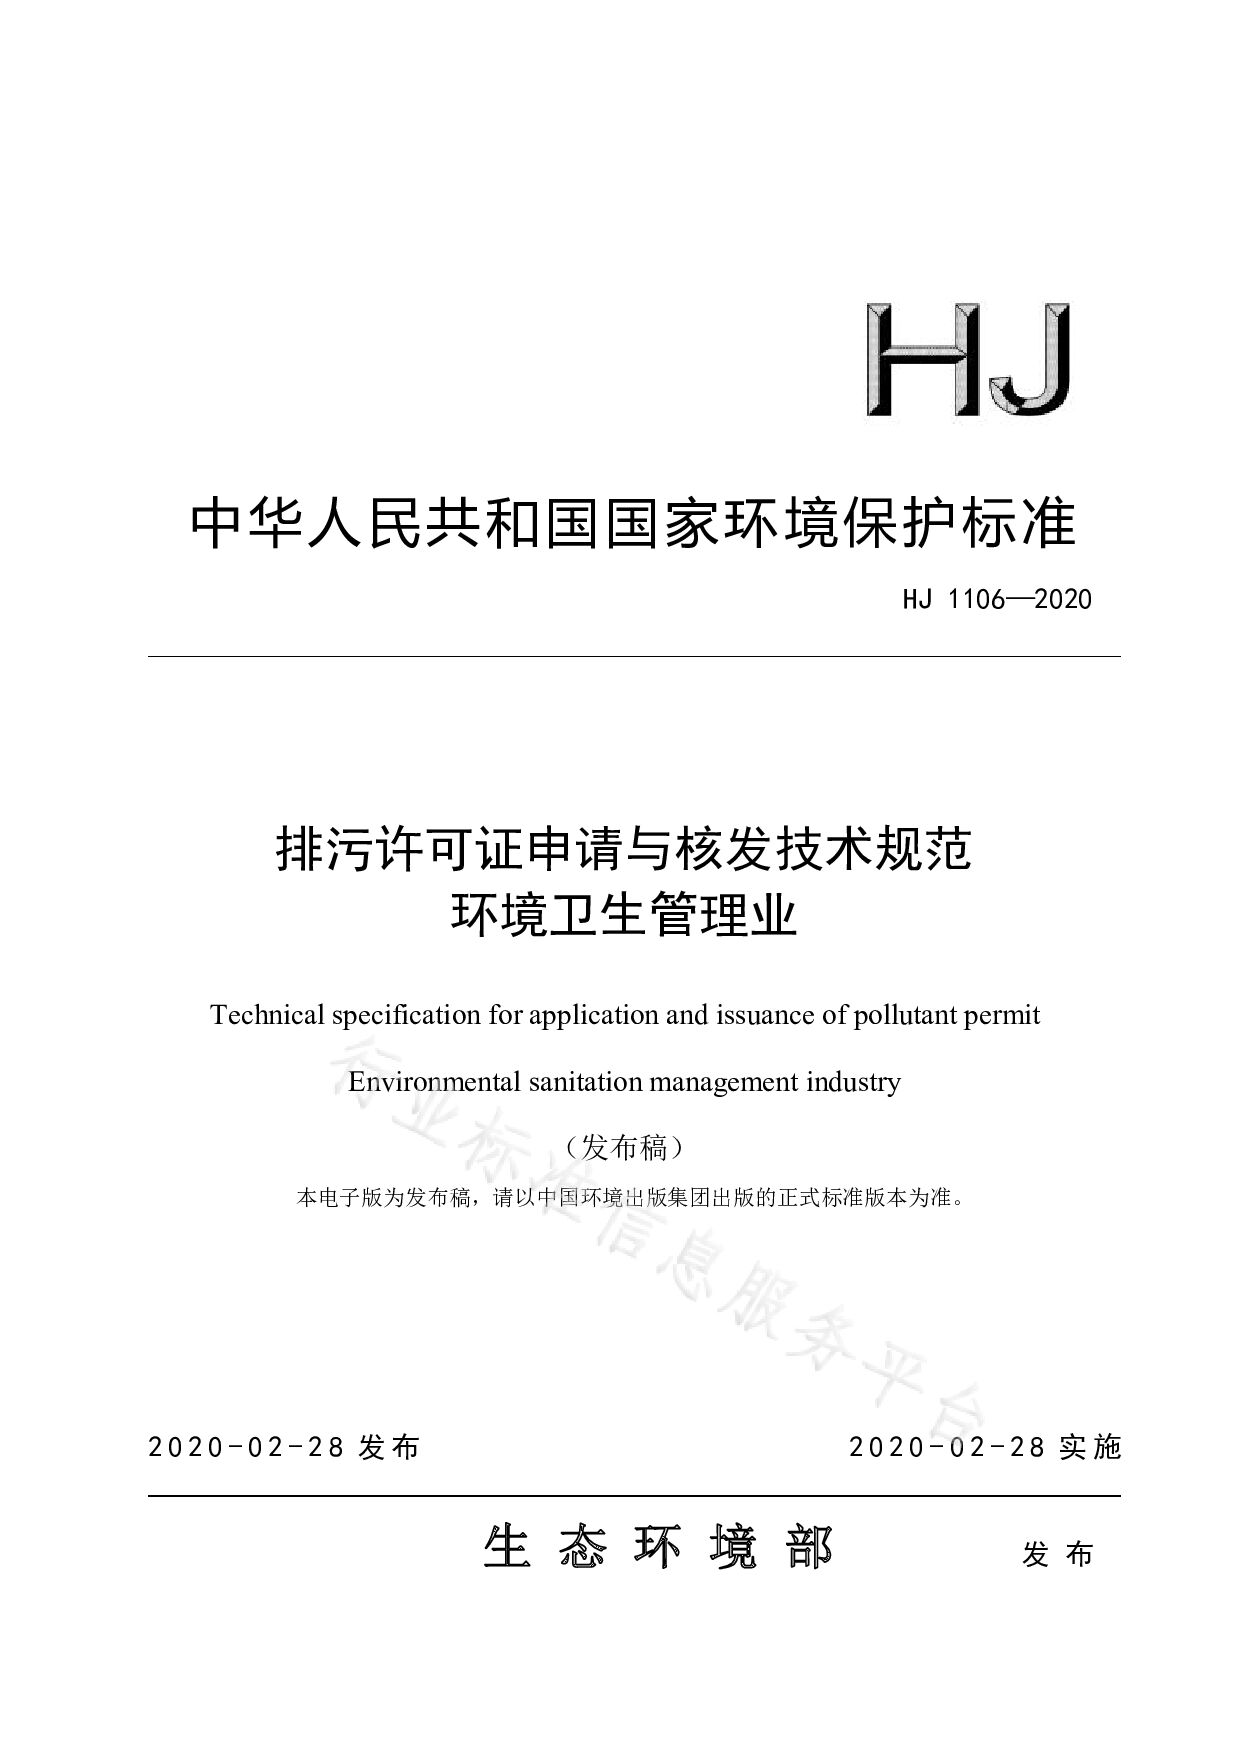 HJ 1106-2020封面图